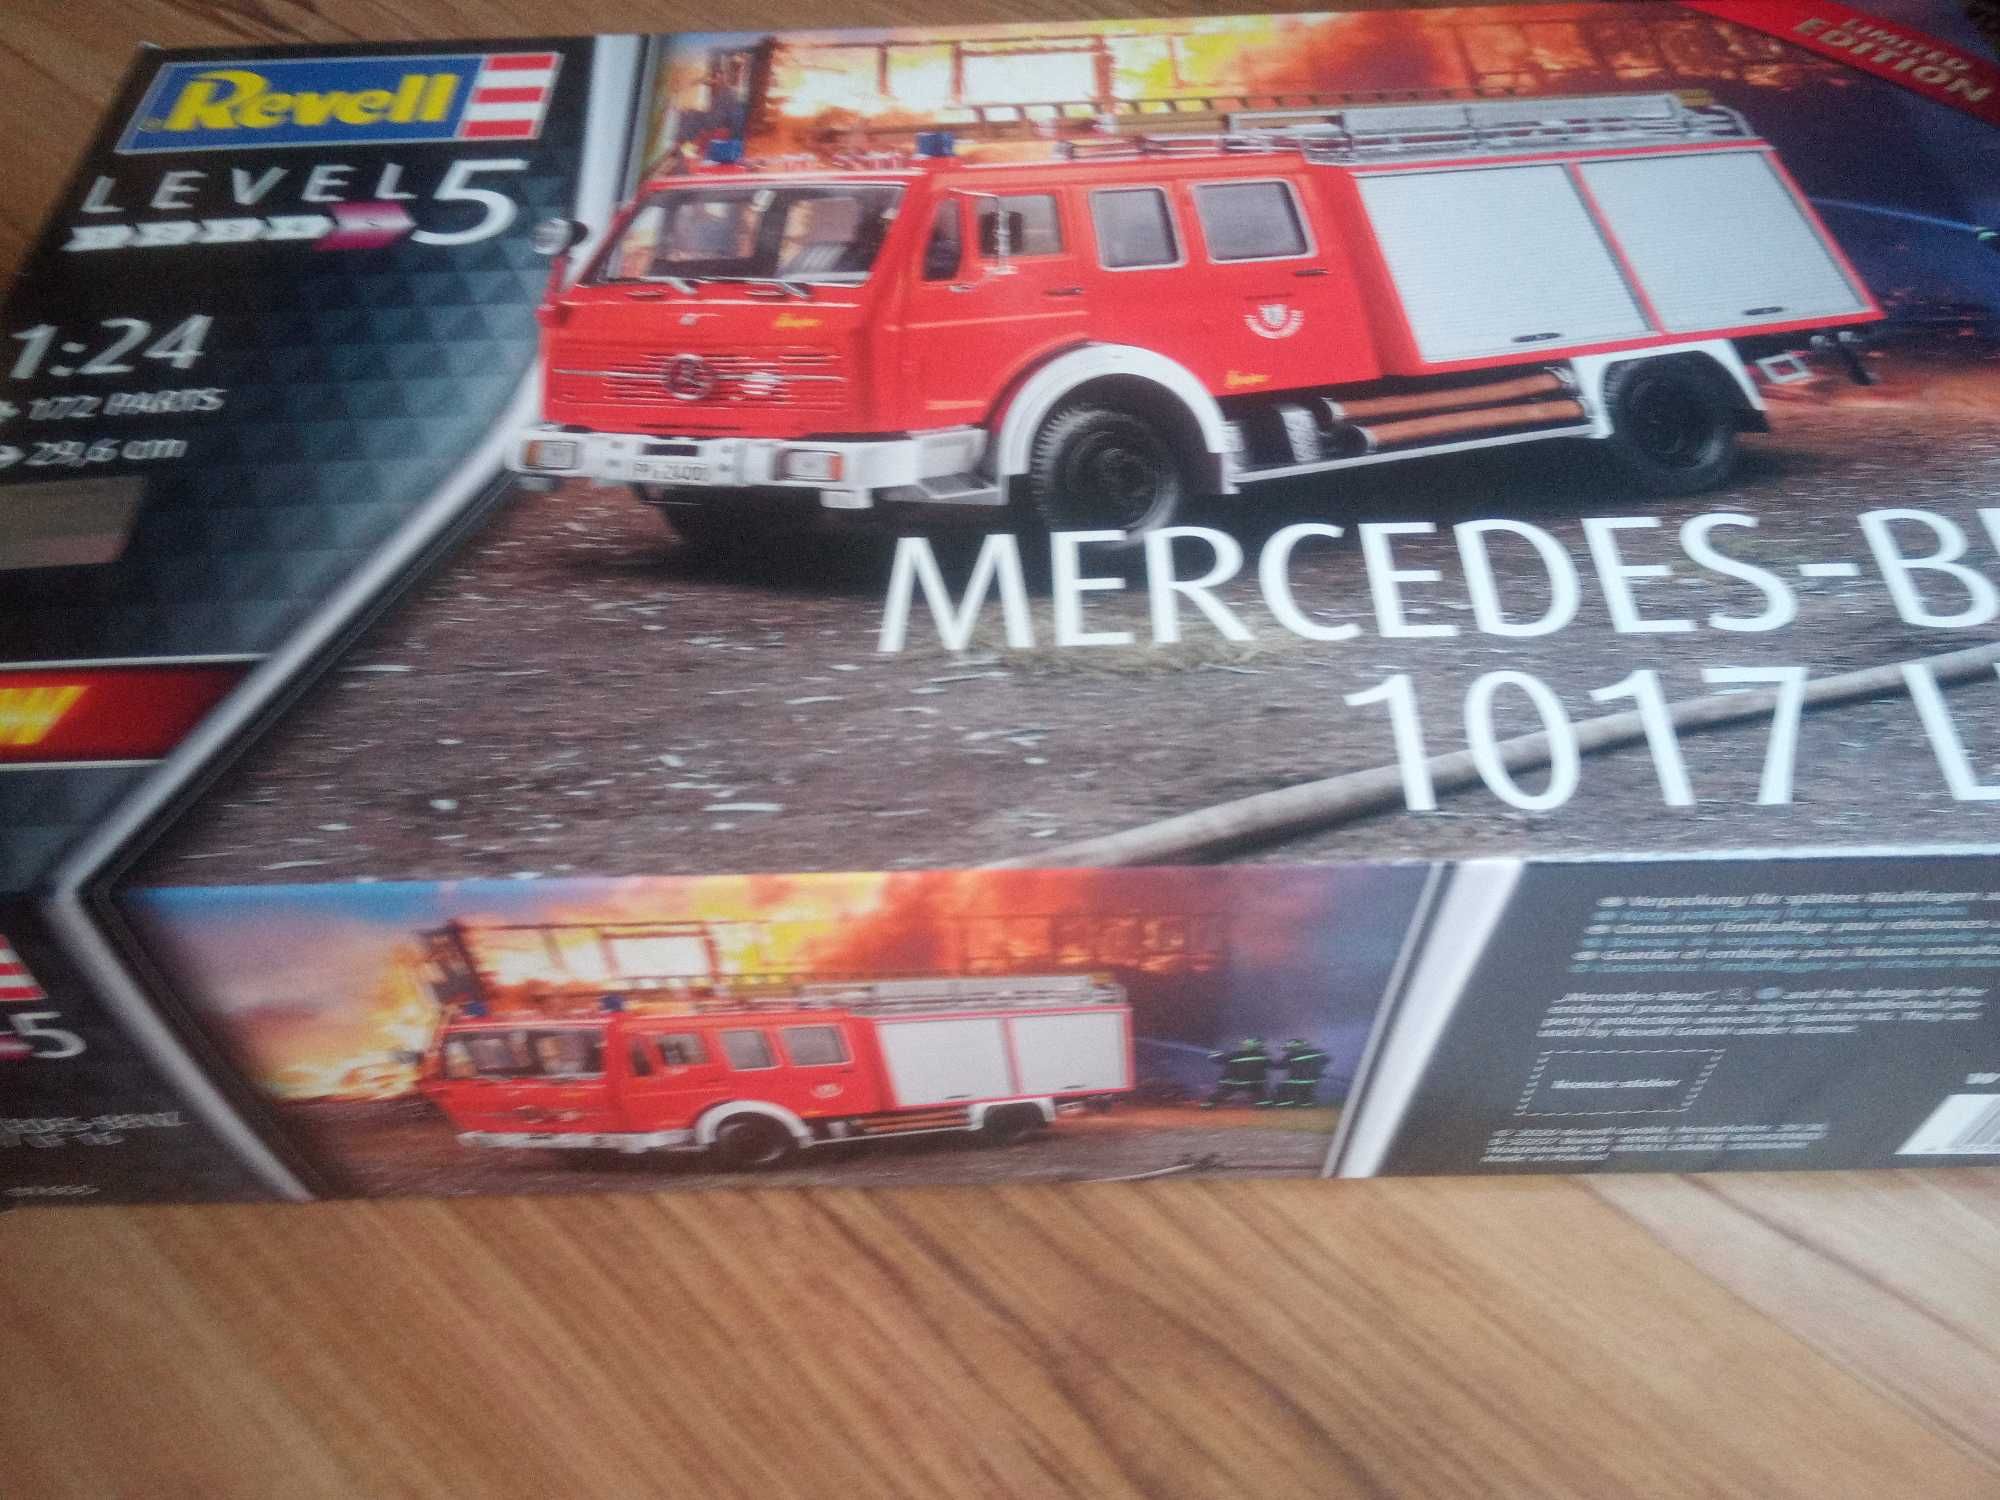 Revell 07655 - Mercedes-Benz 1017 LF 16 - Model do sklejania